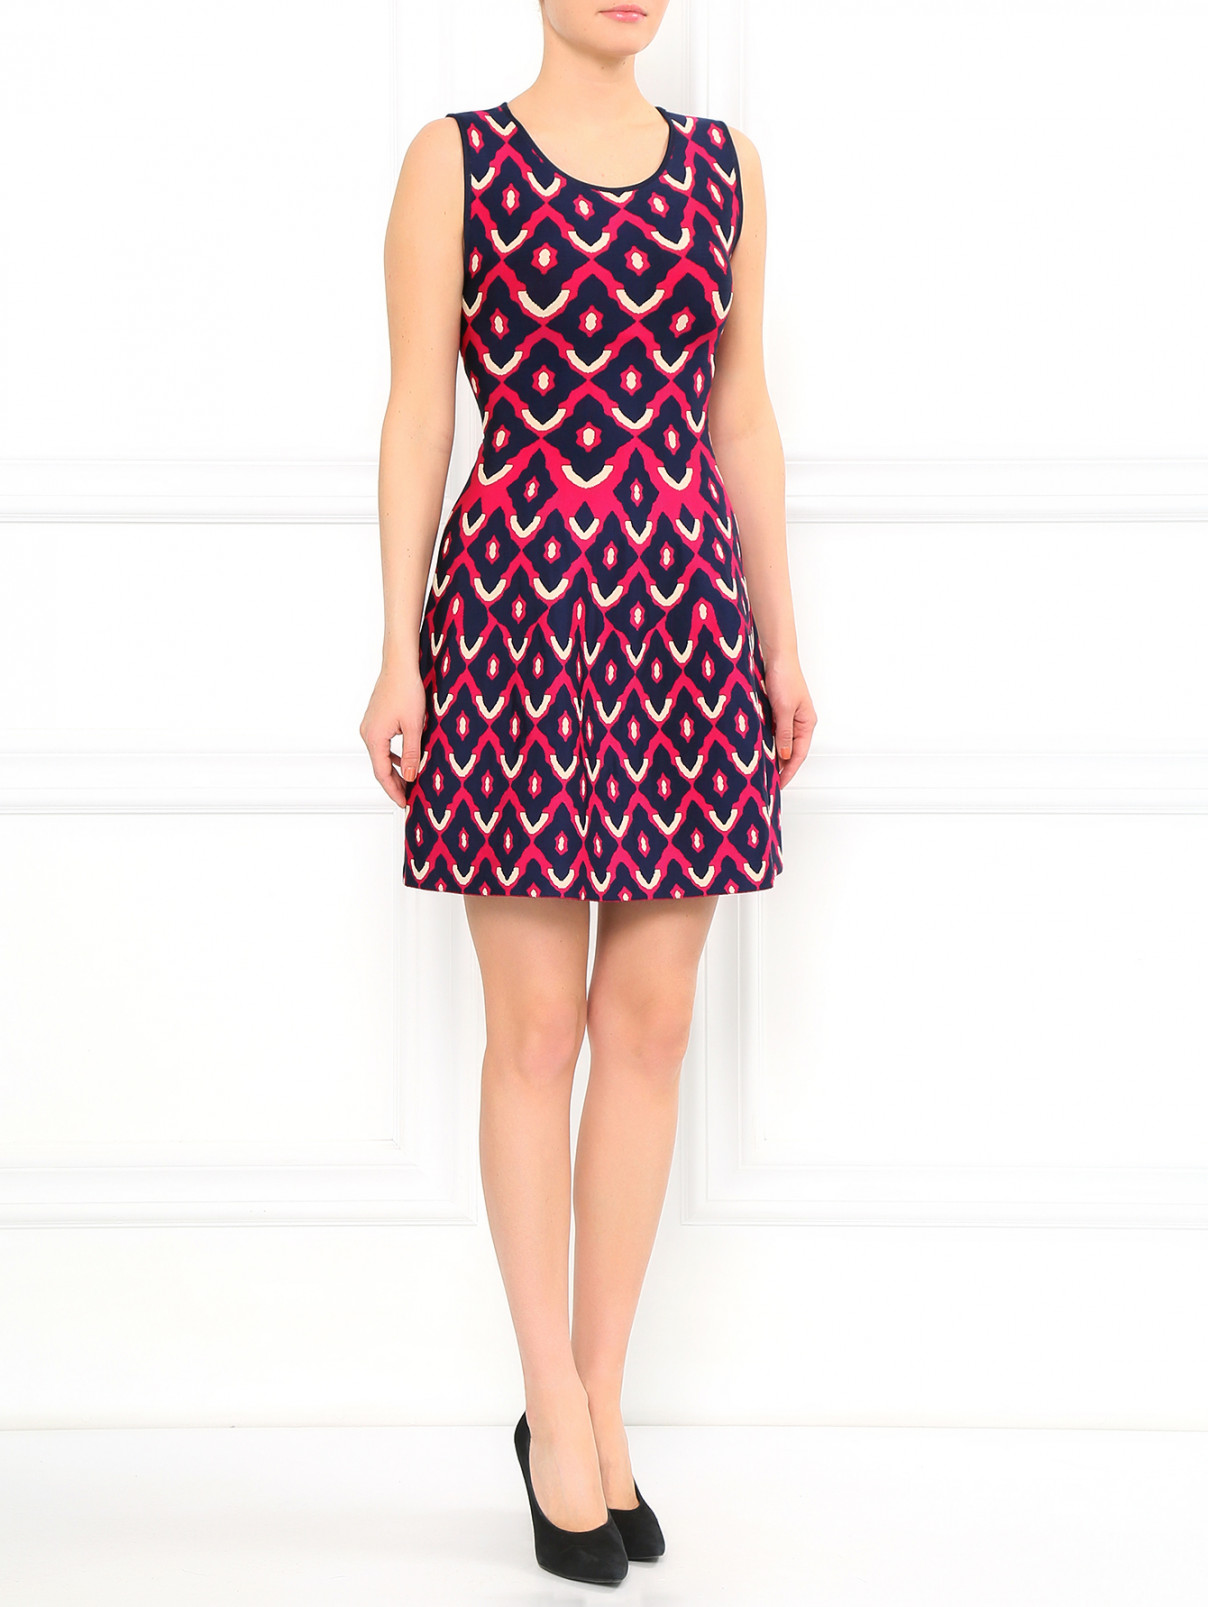 Трикотажное платье из фактурной ткани GIG Couture  –  Модель Общий вид  – Цвет:  Узор